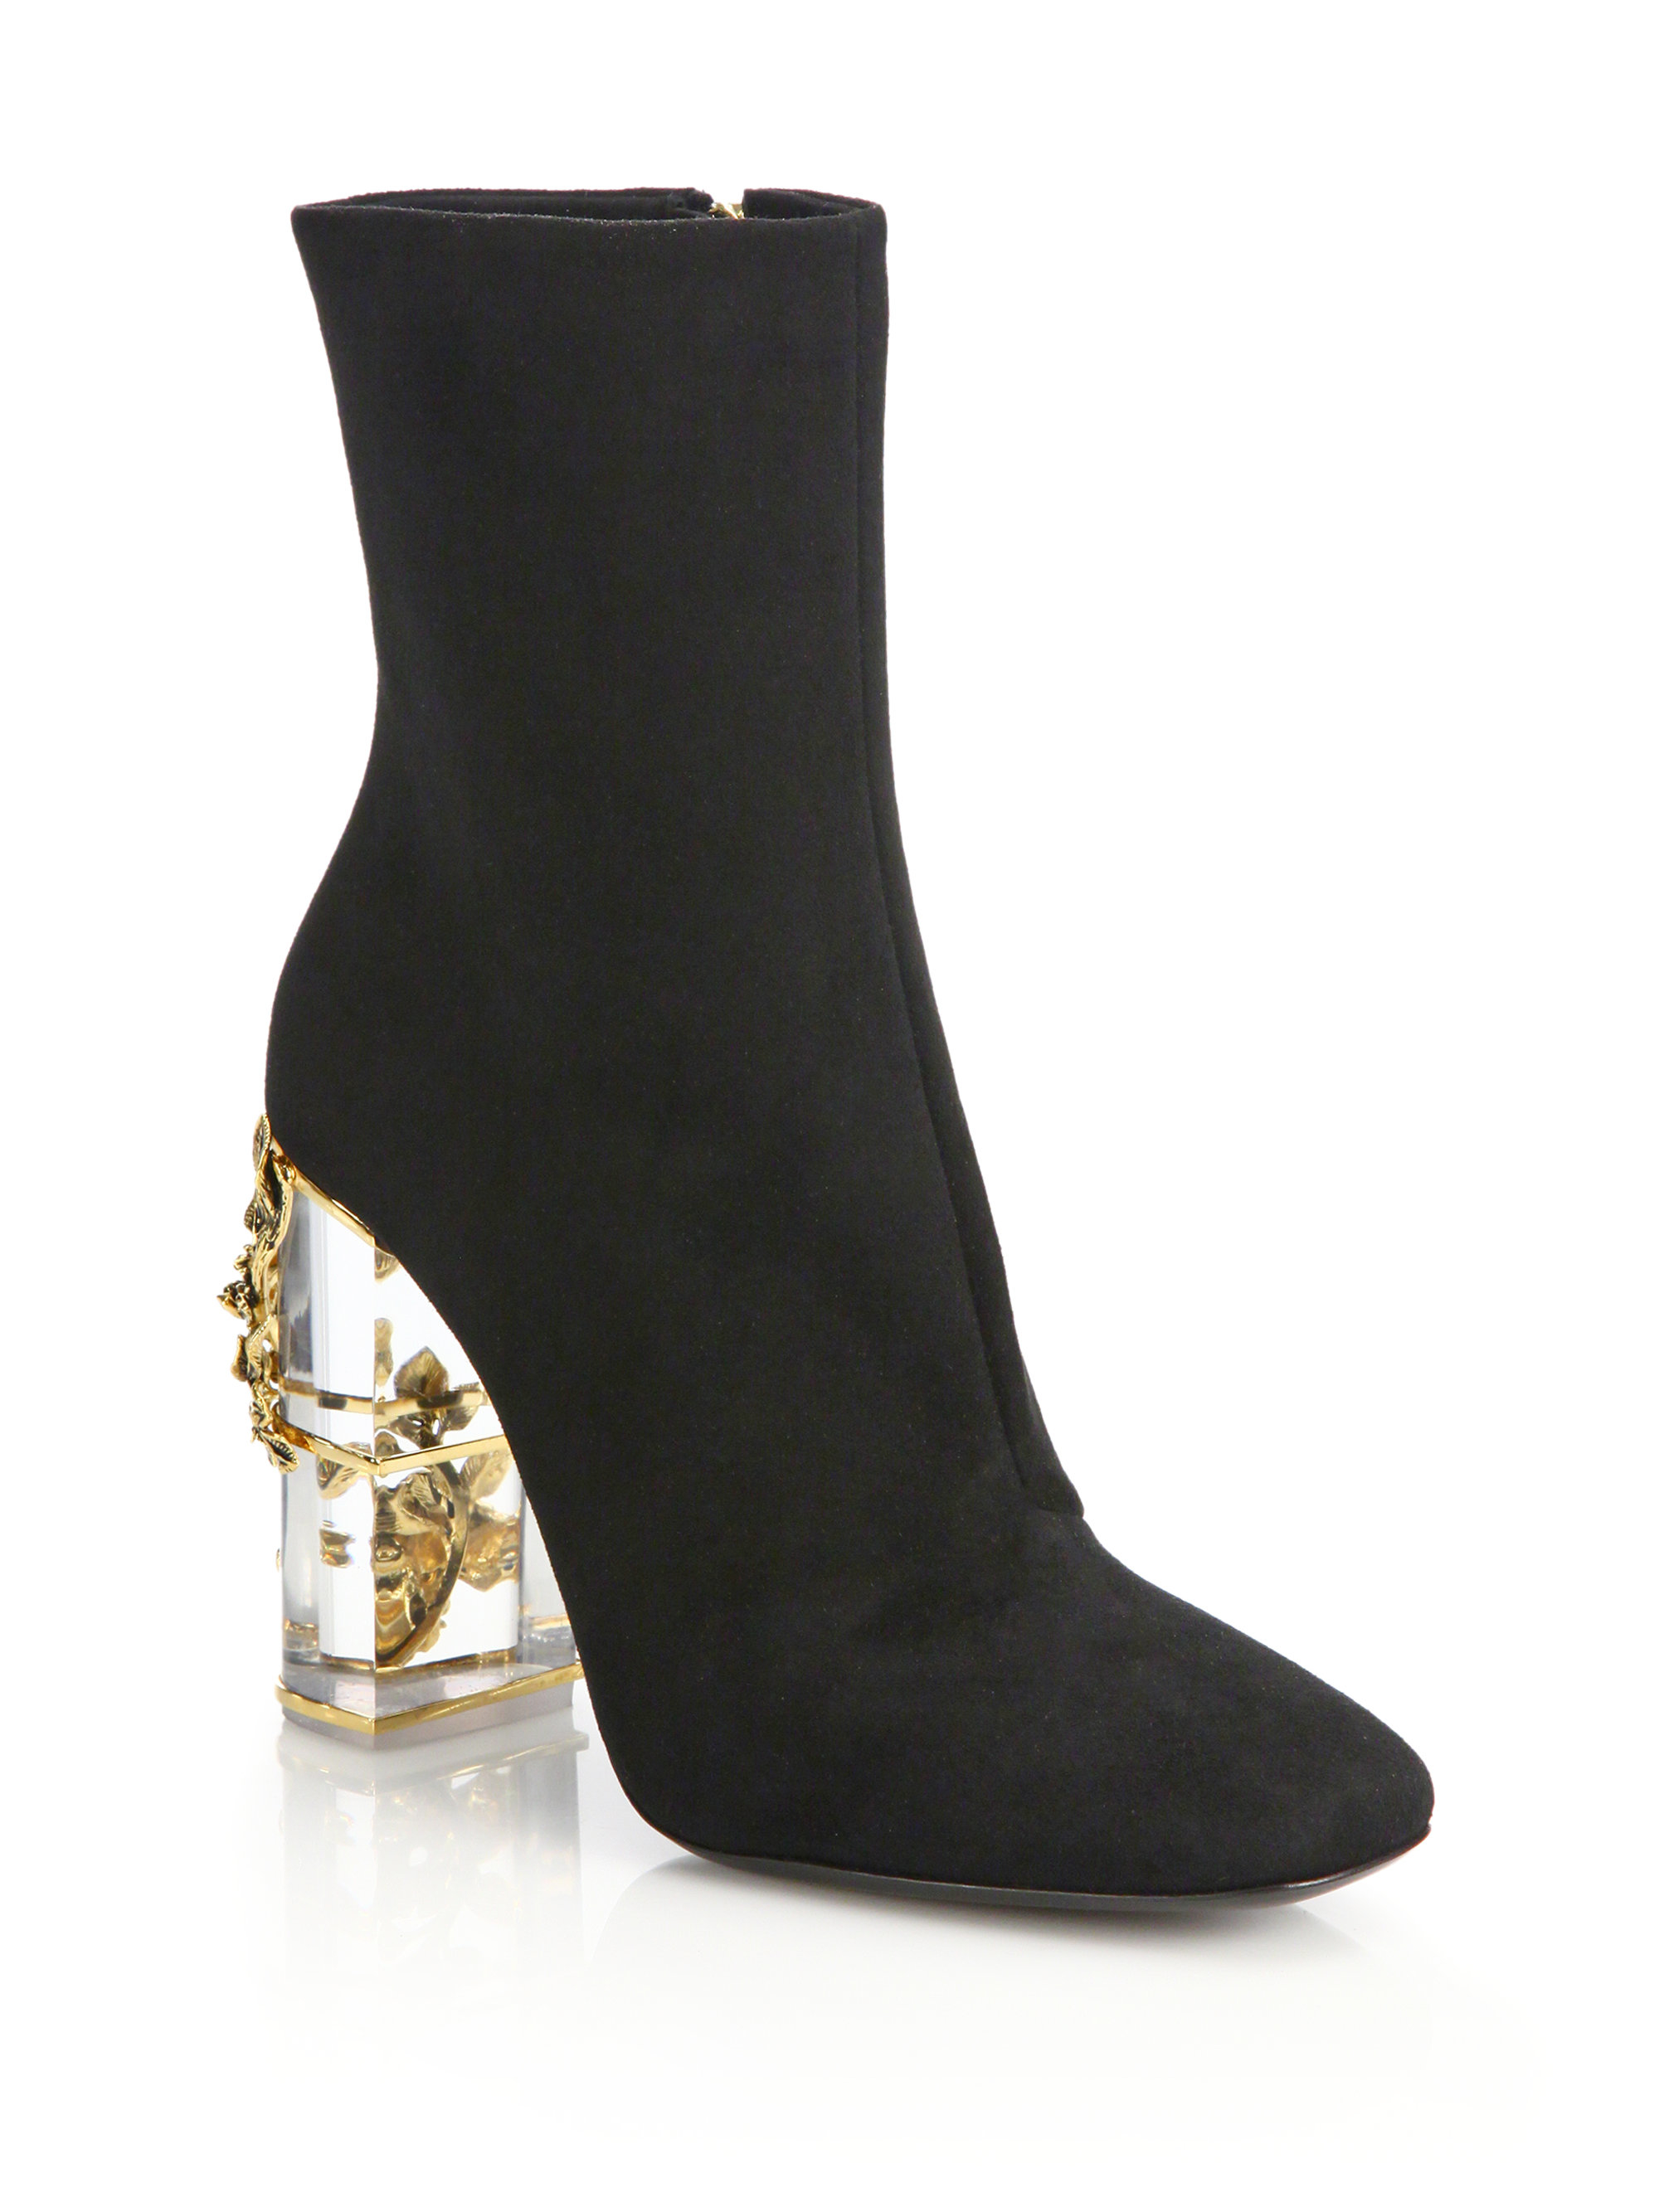 Lyst - Roberto Cavalli Suede & Embellished Lucite-heel Booties in Black